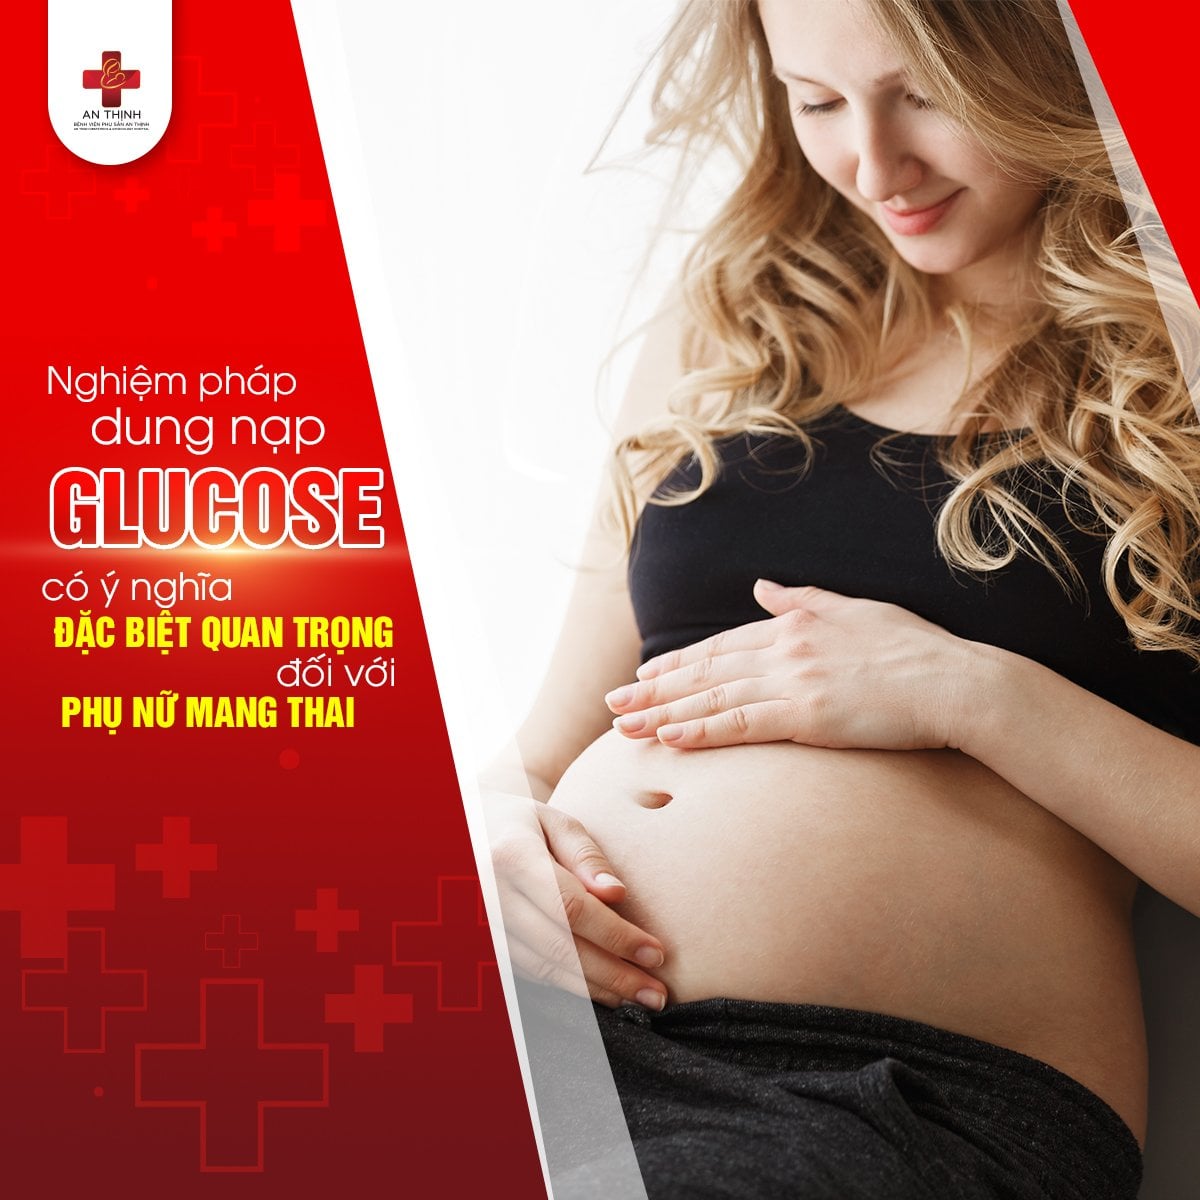 Nghiệm pháp dung nạp glucose có ý nghĩa rất quan trọng với phụ nữ mang thai, giúp phát hiện sớm tiểu đường thai kỳ